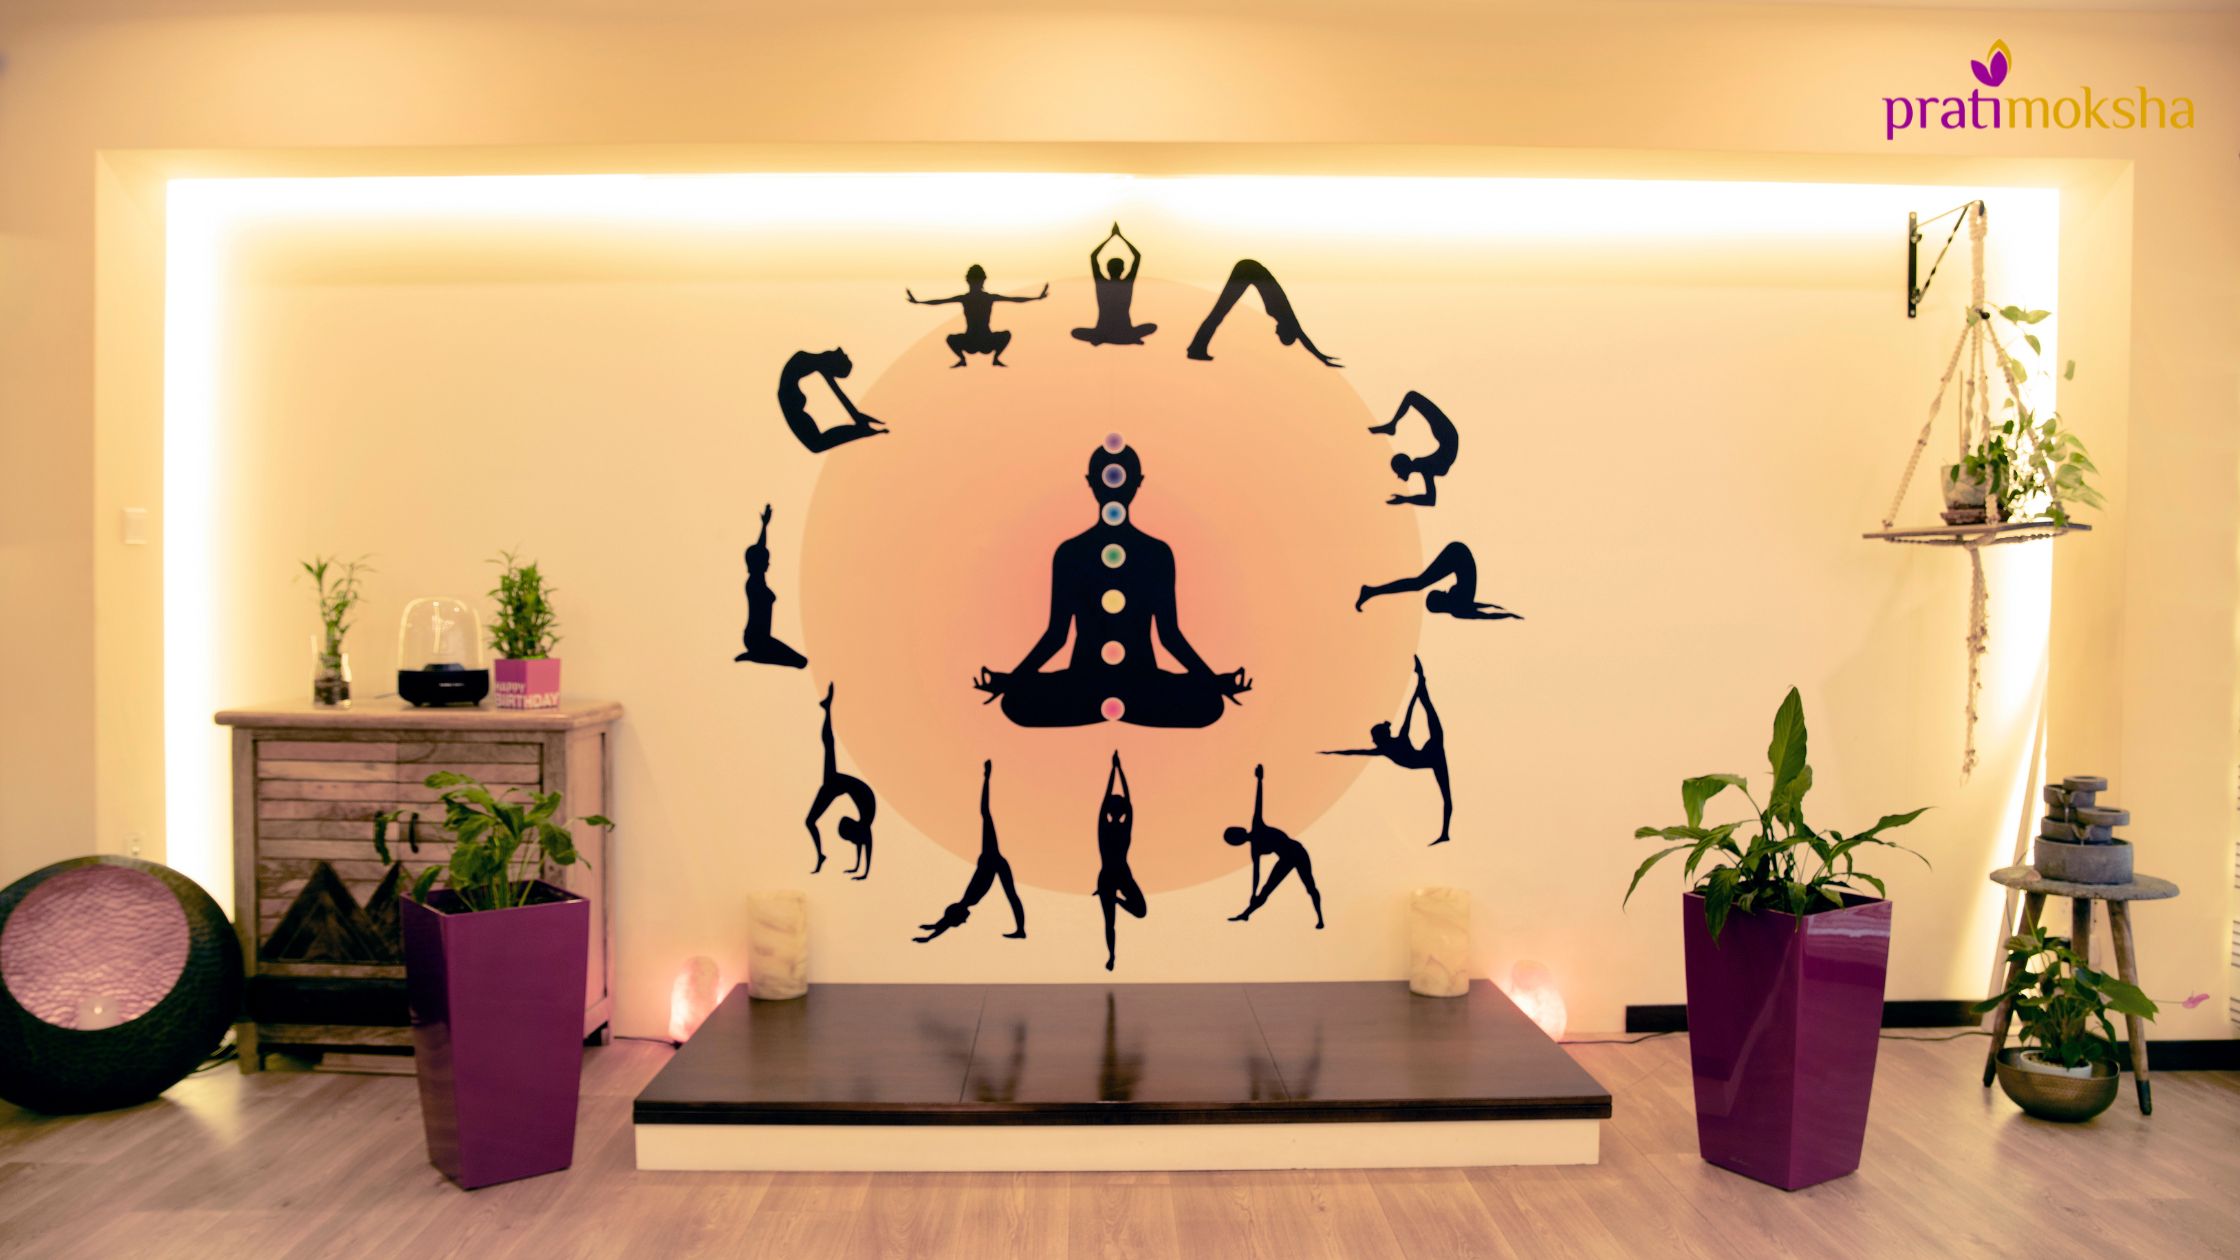 How to choose the best Yoga Center near me? - Dubai - Oud Metha -  Pratimoksha - Enlighten Yoga Center